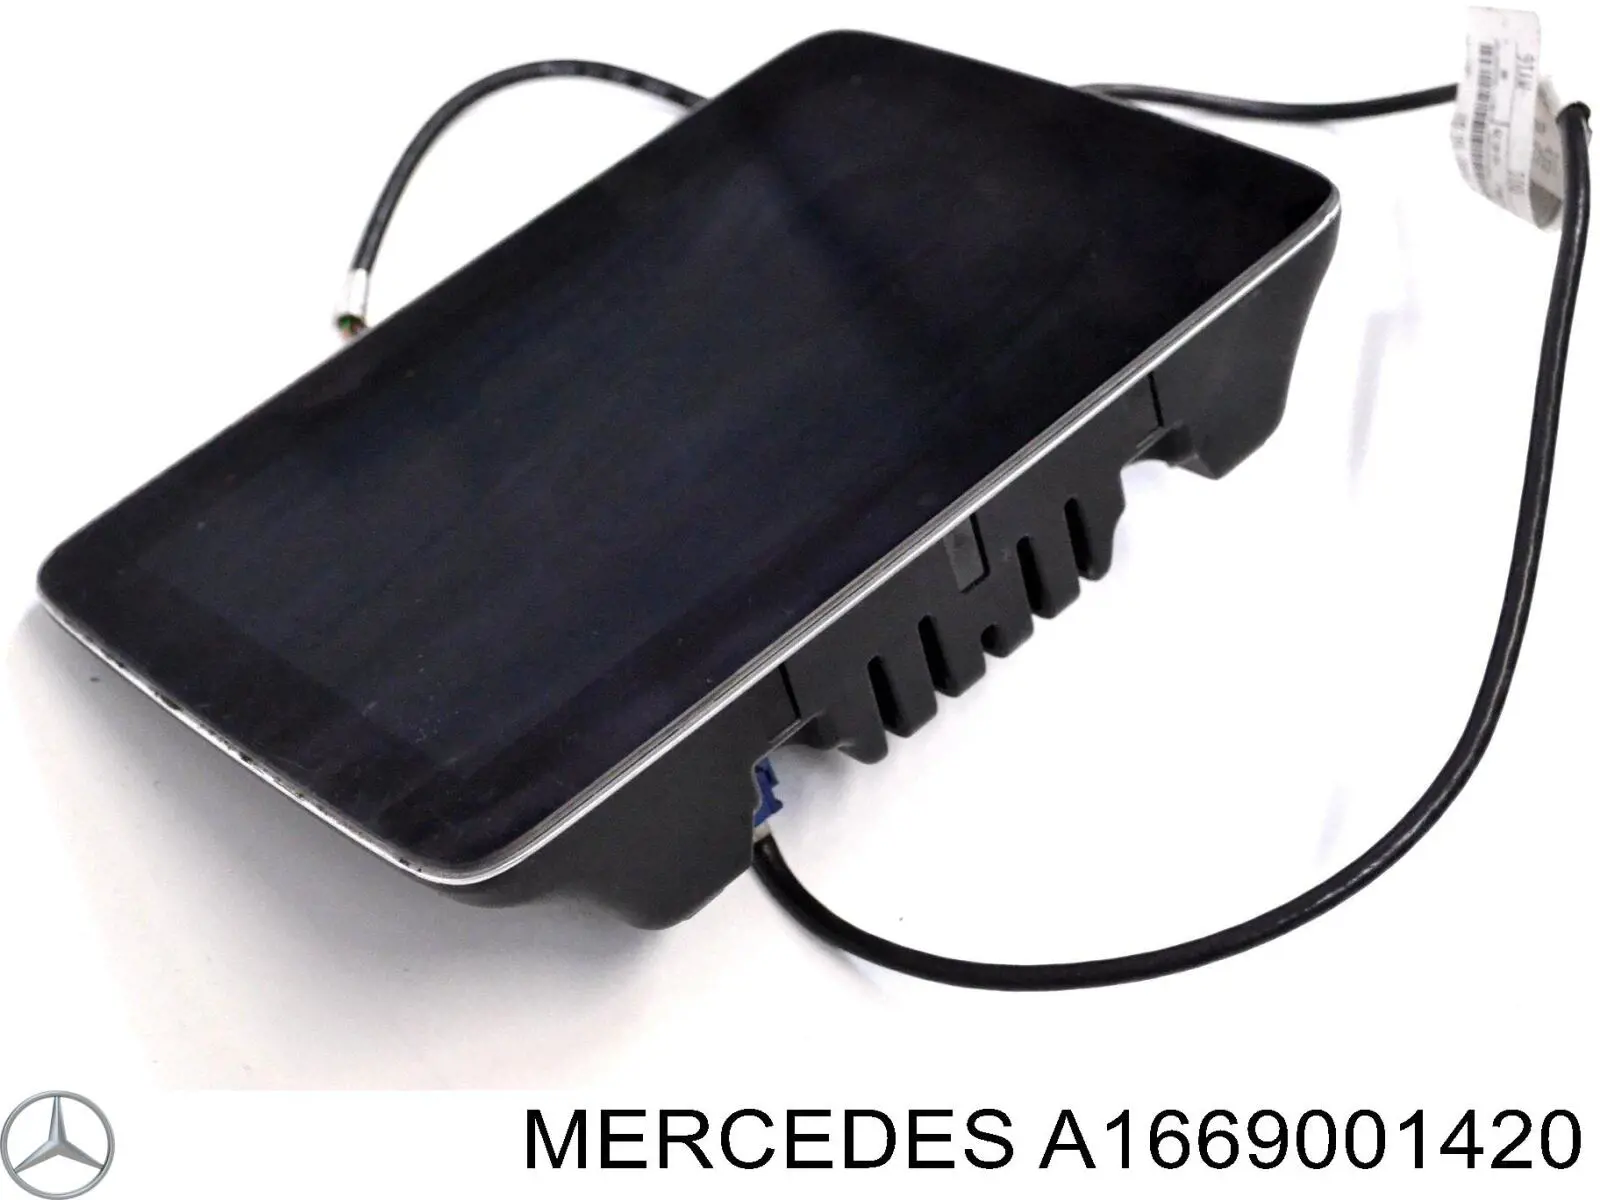 A1669001420 Mercedes pantalla multifuncion